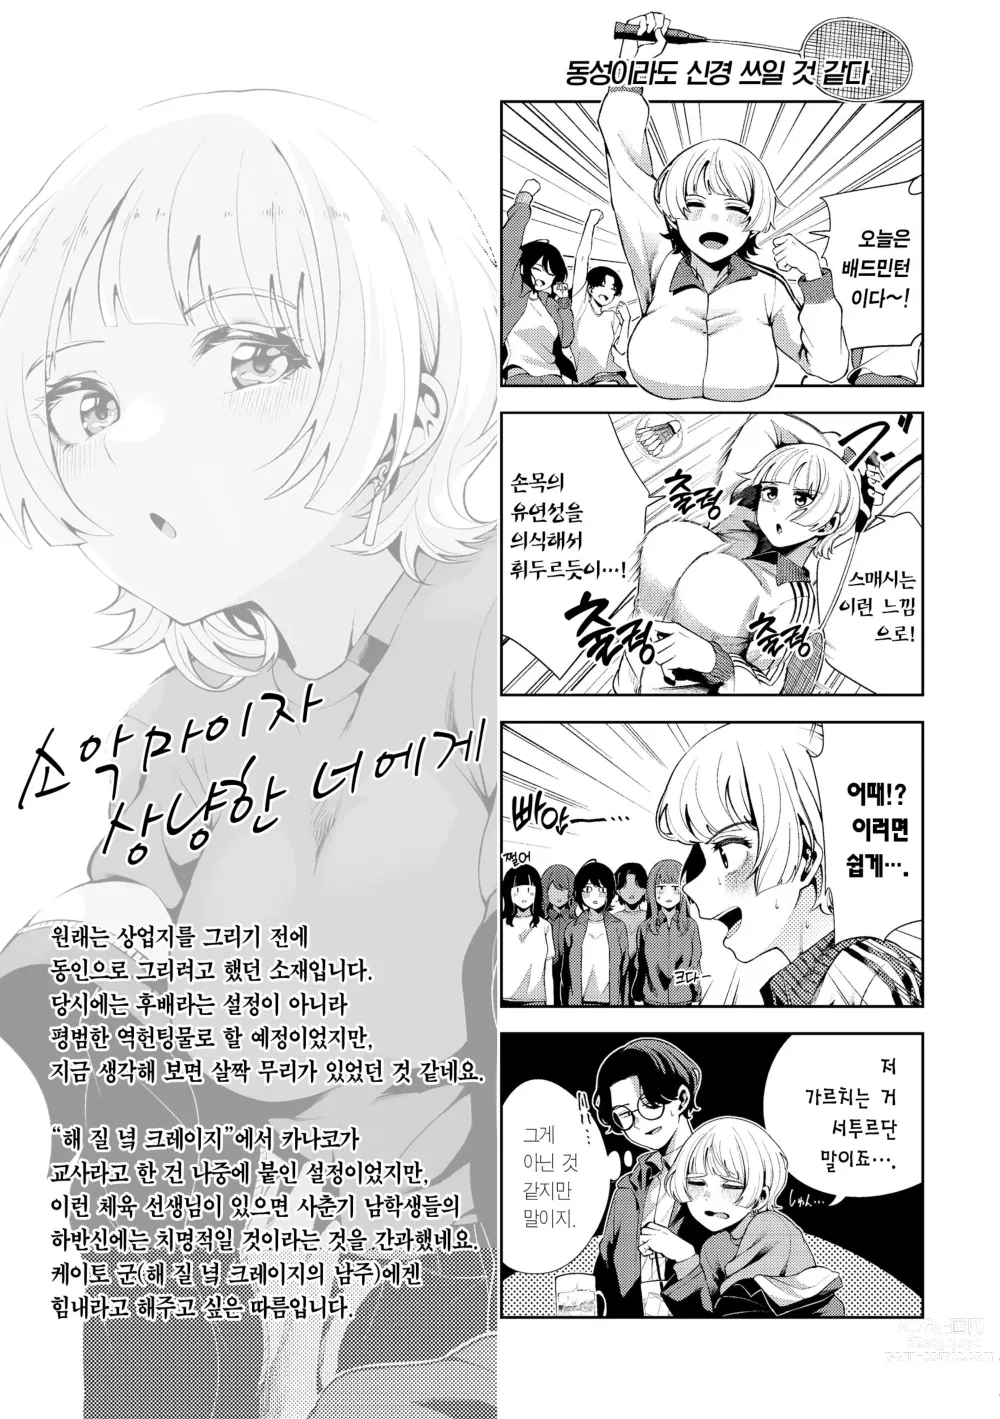 Page 159 of manga 나로 물들이고 싶어